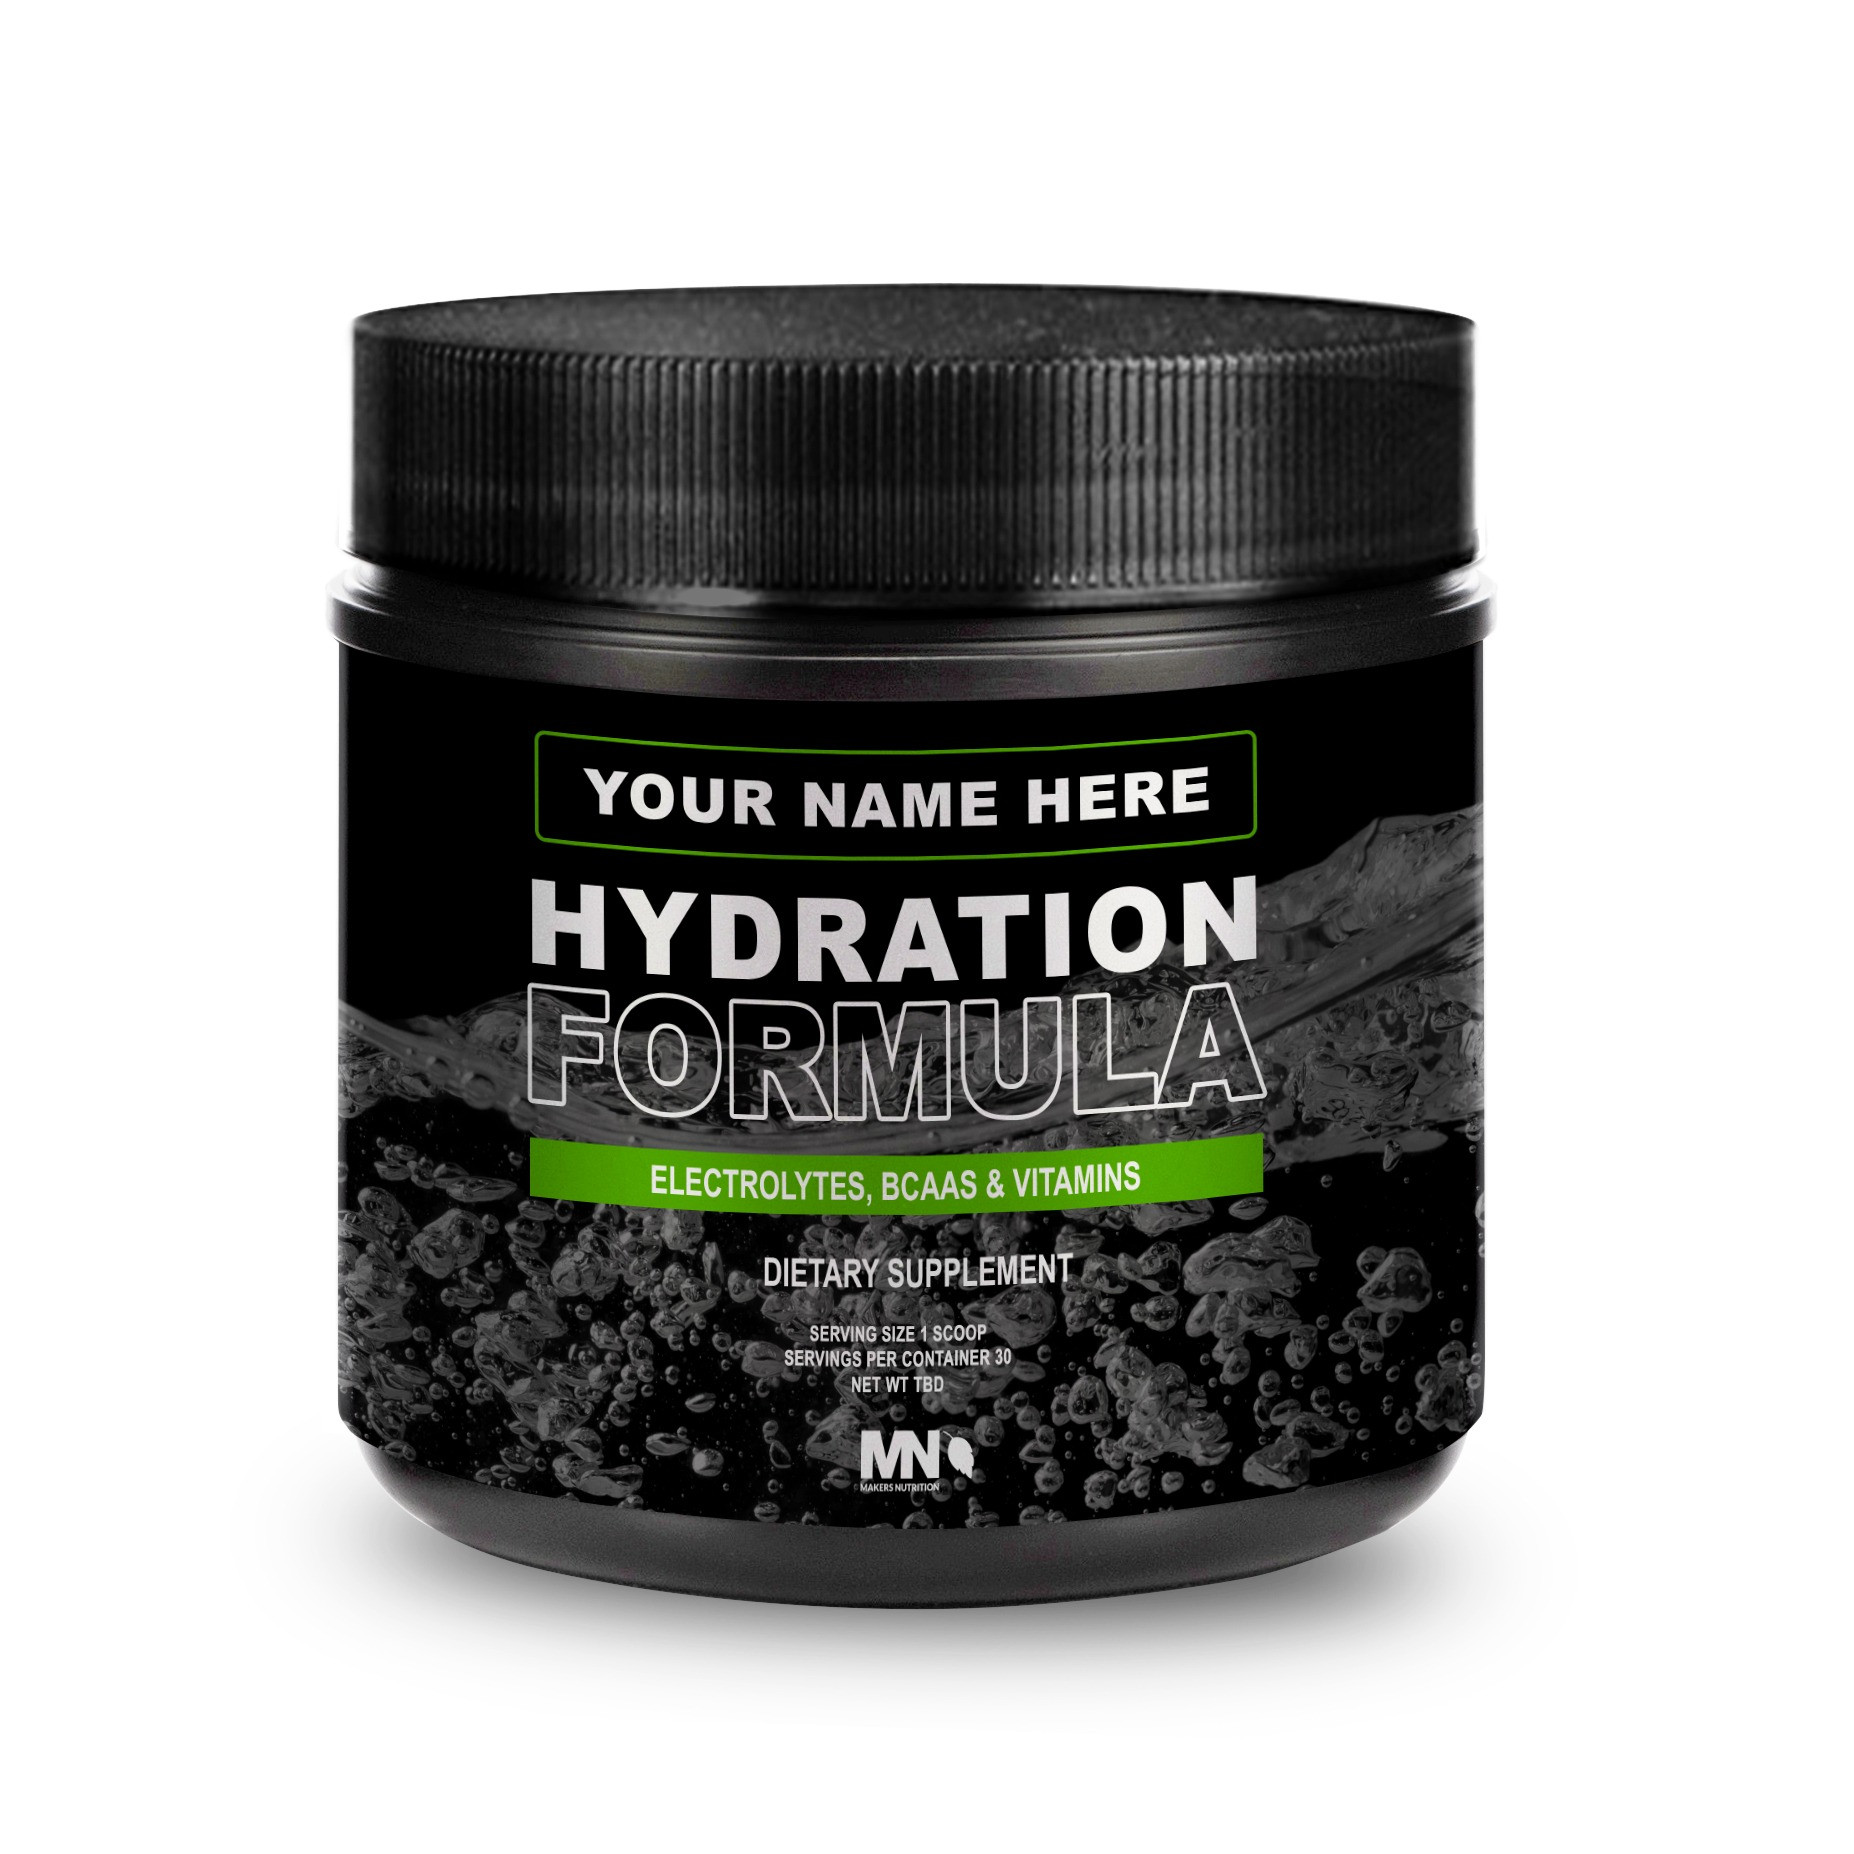 Hydration Formula